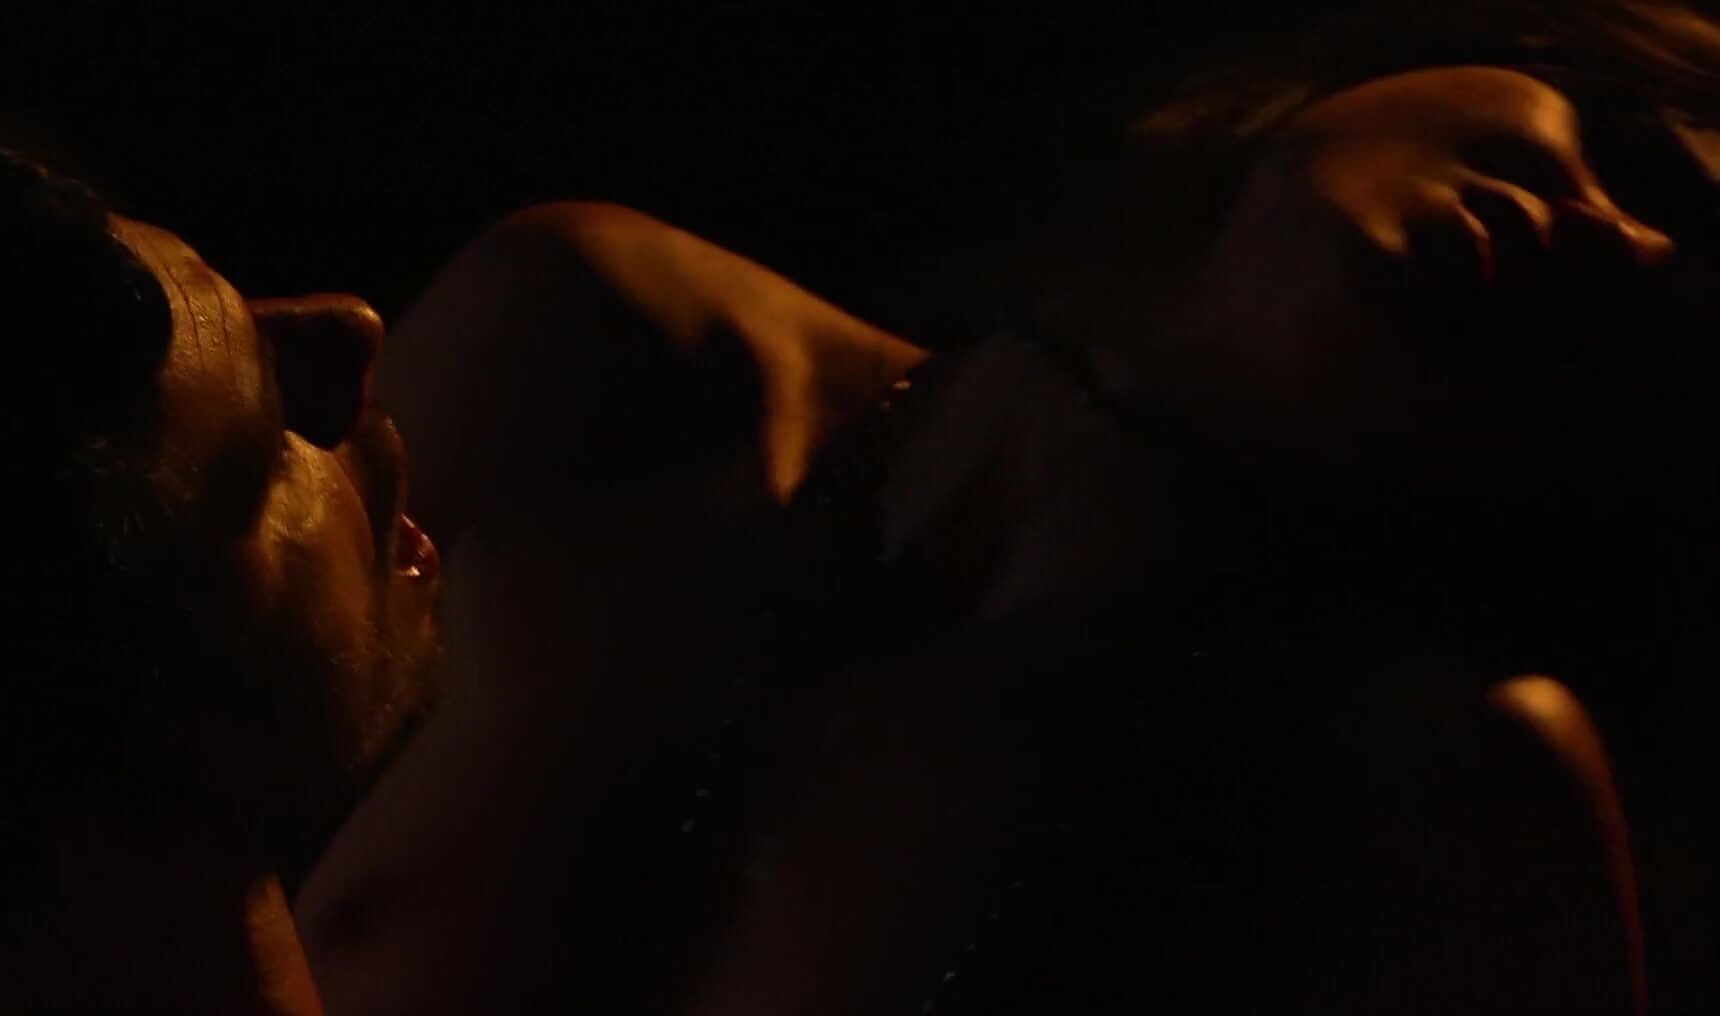 Jizz Tempting Malena Morgan rides cock in the darkness in romantic hot movie sex scene Machine